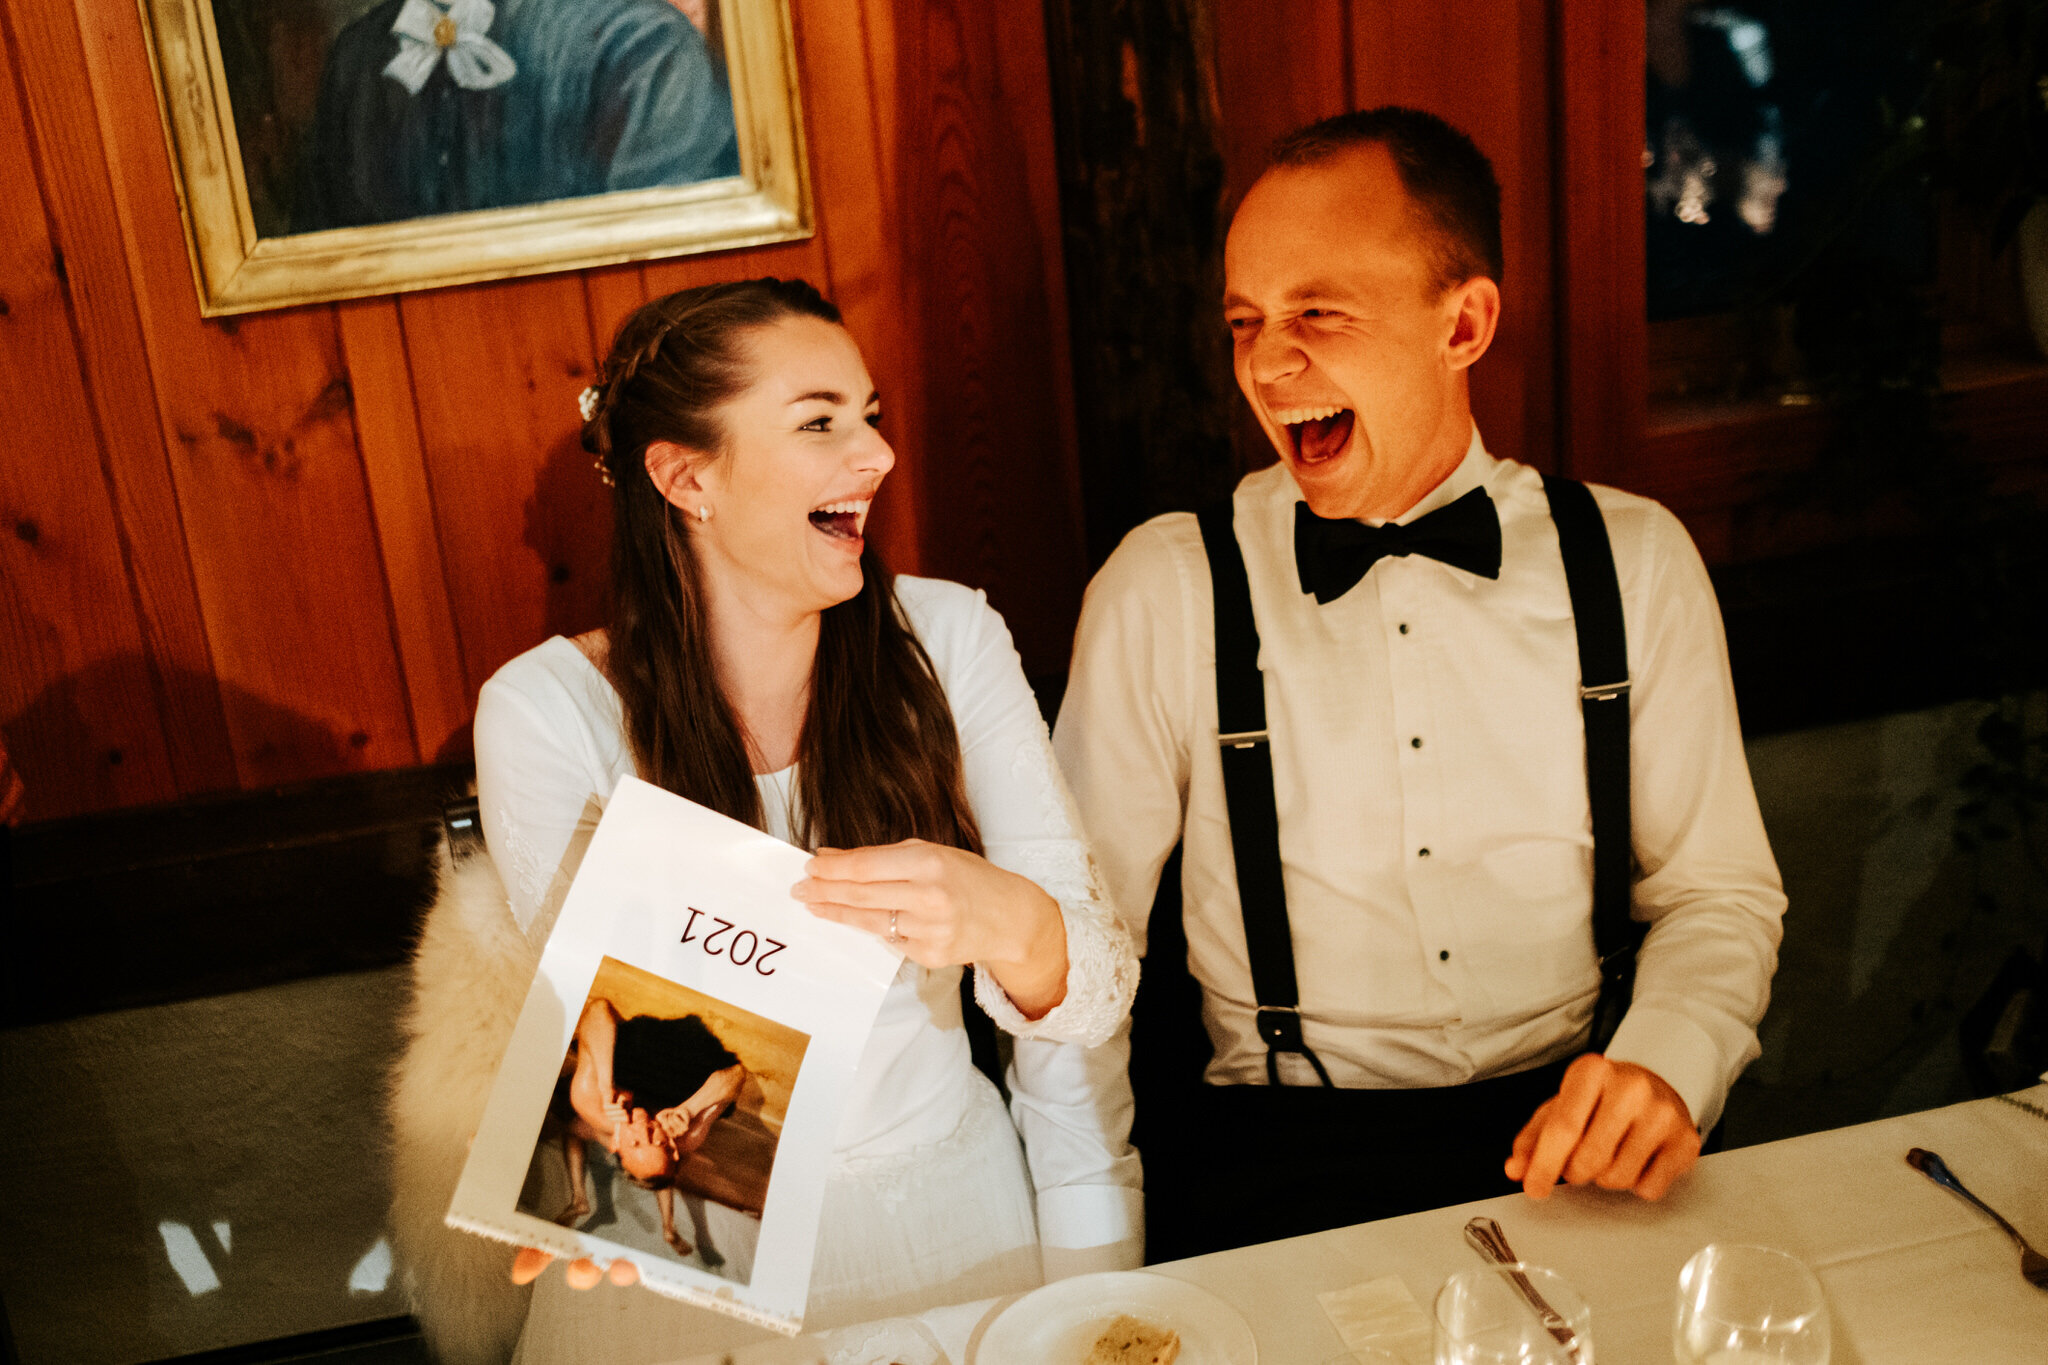  Når brudeparet fikk se den lettkledde kalenderen brudgommen måtte stille opp for i utdrikningslaget sitt satt latteren løst! 